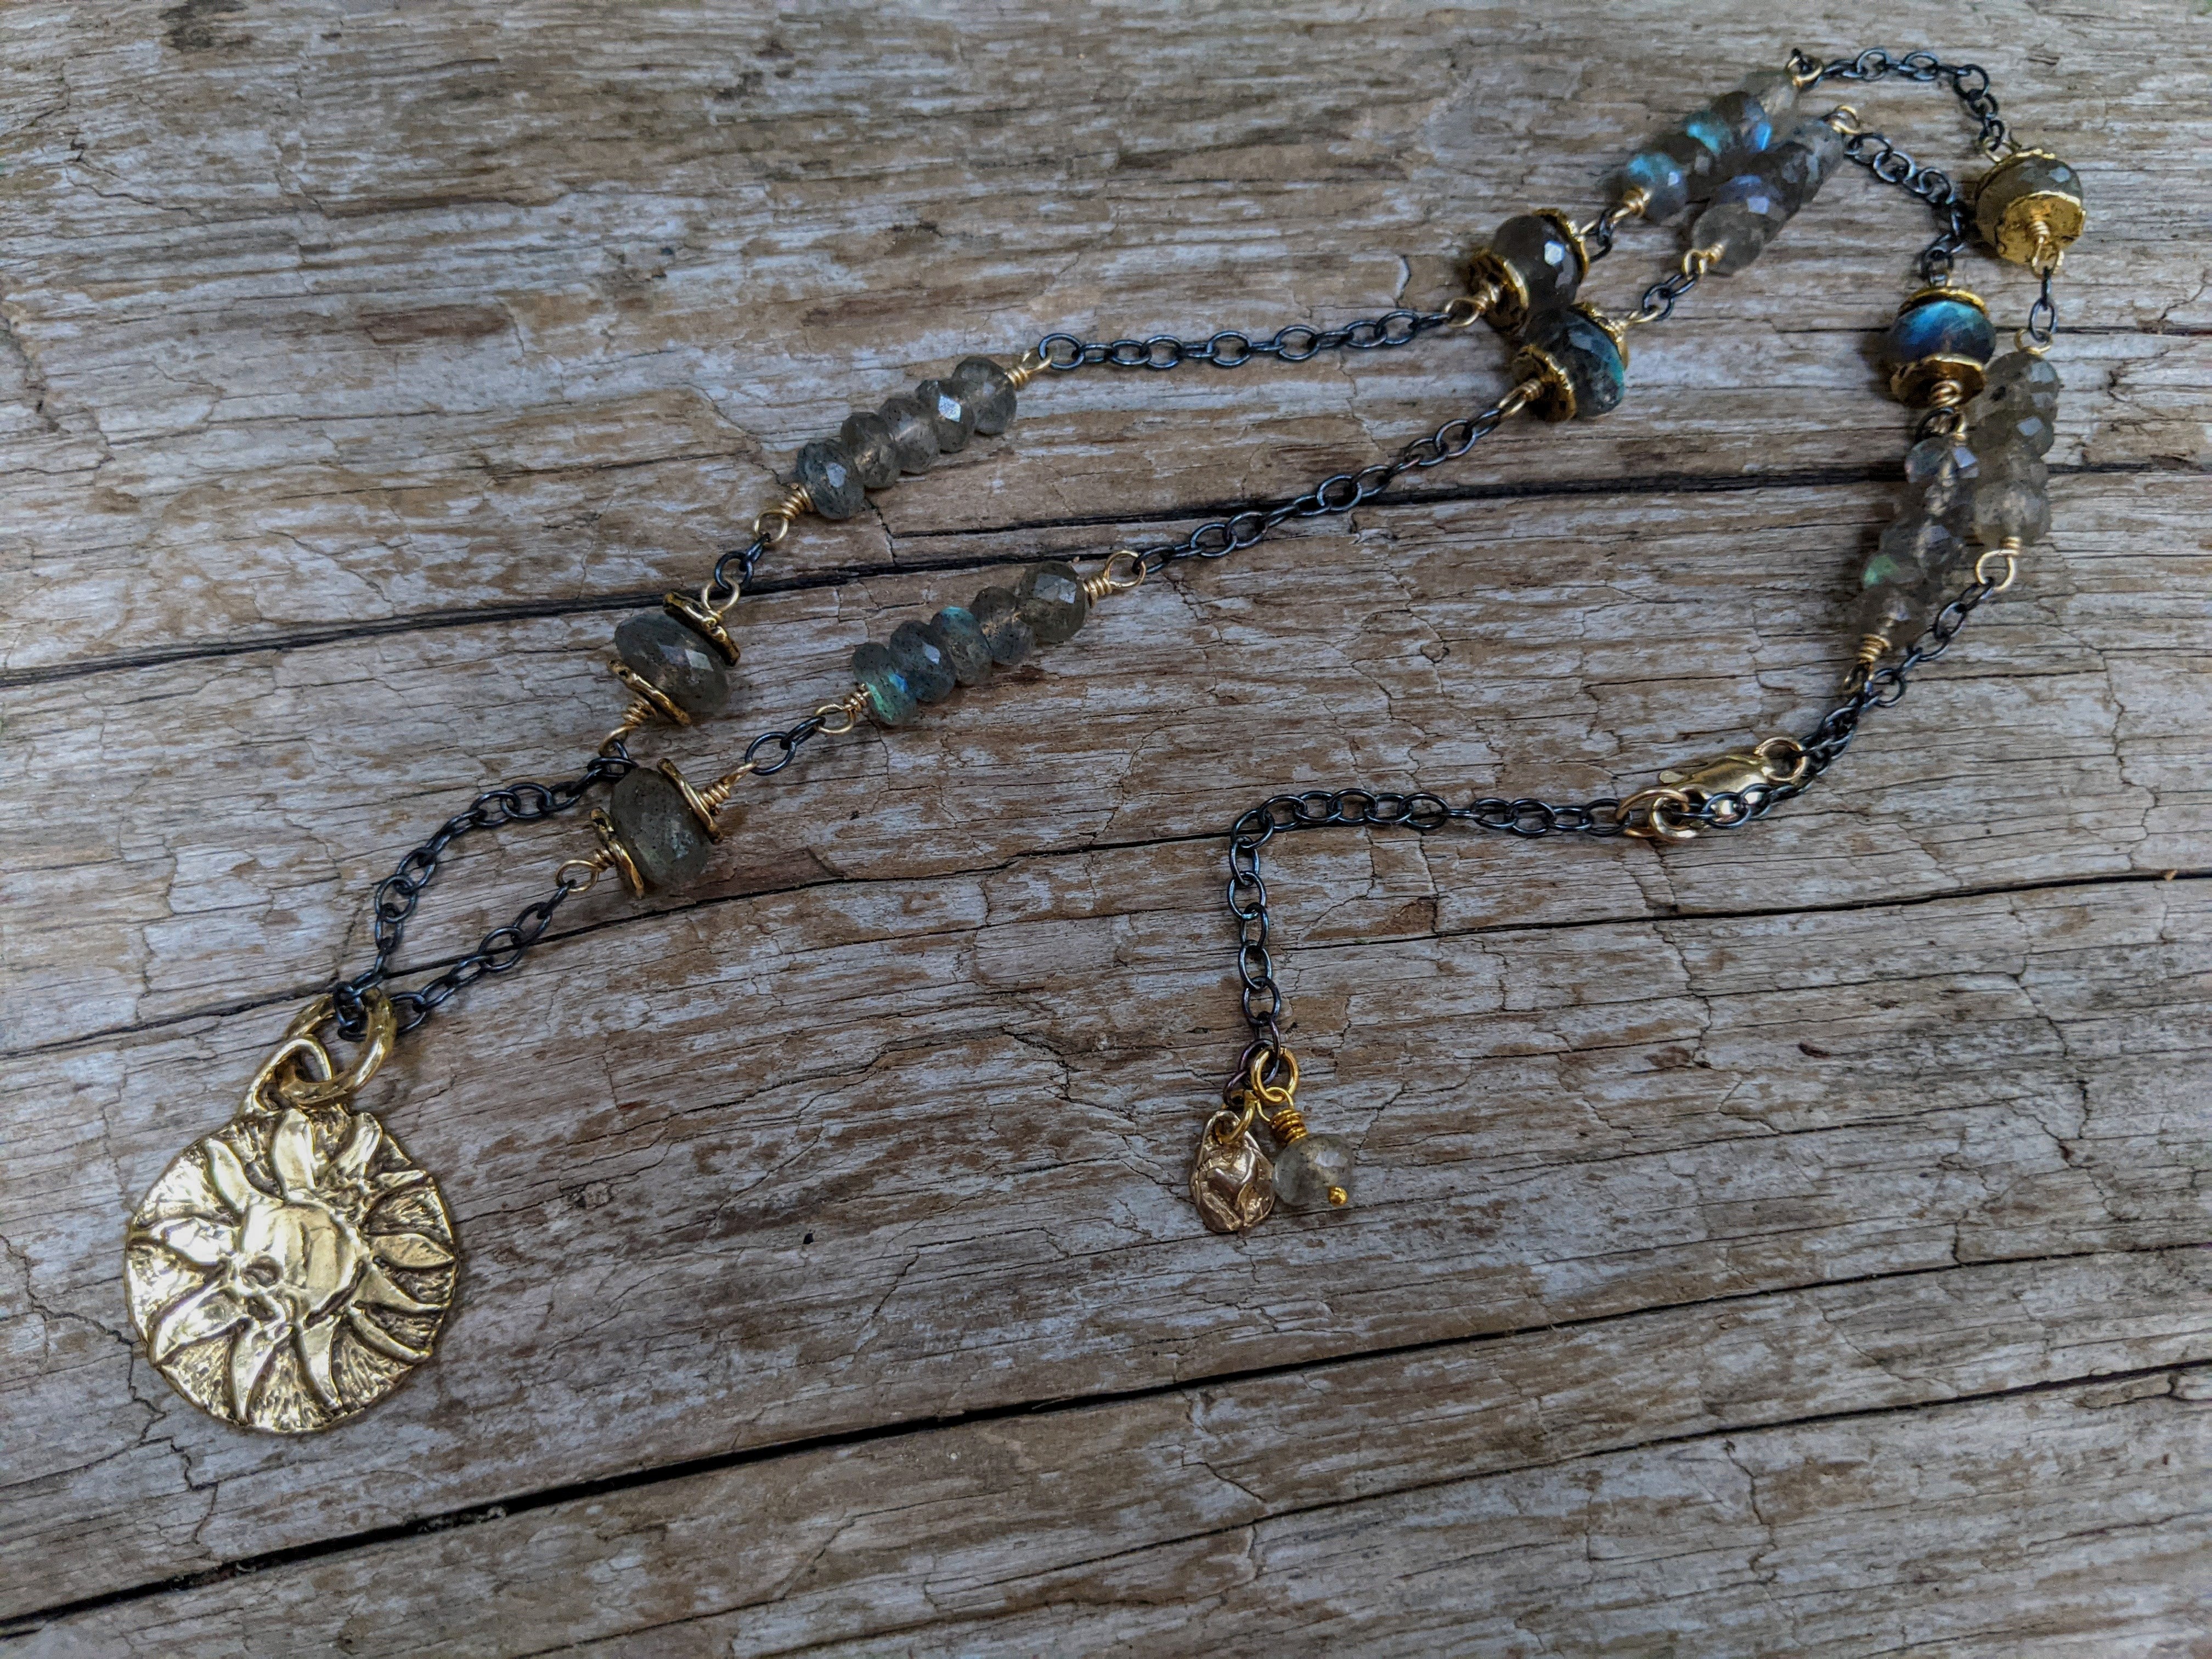 Labradorite necklace. Sun pendant necklace. Symbol sun pendant necklace. Artisan necklace handcrafted by Aurora Creative Jewellery.